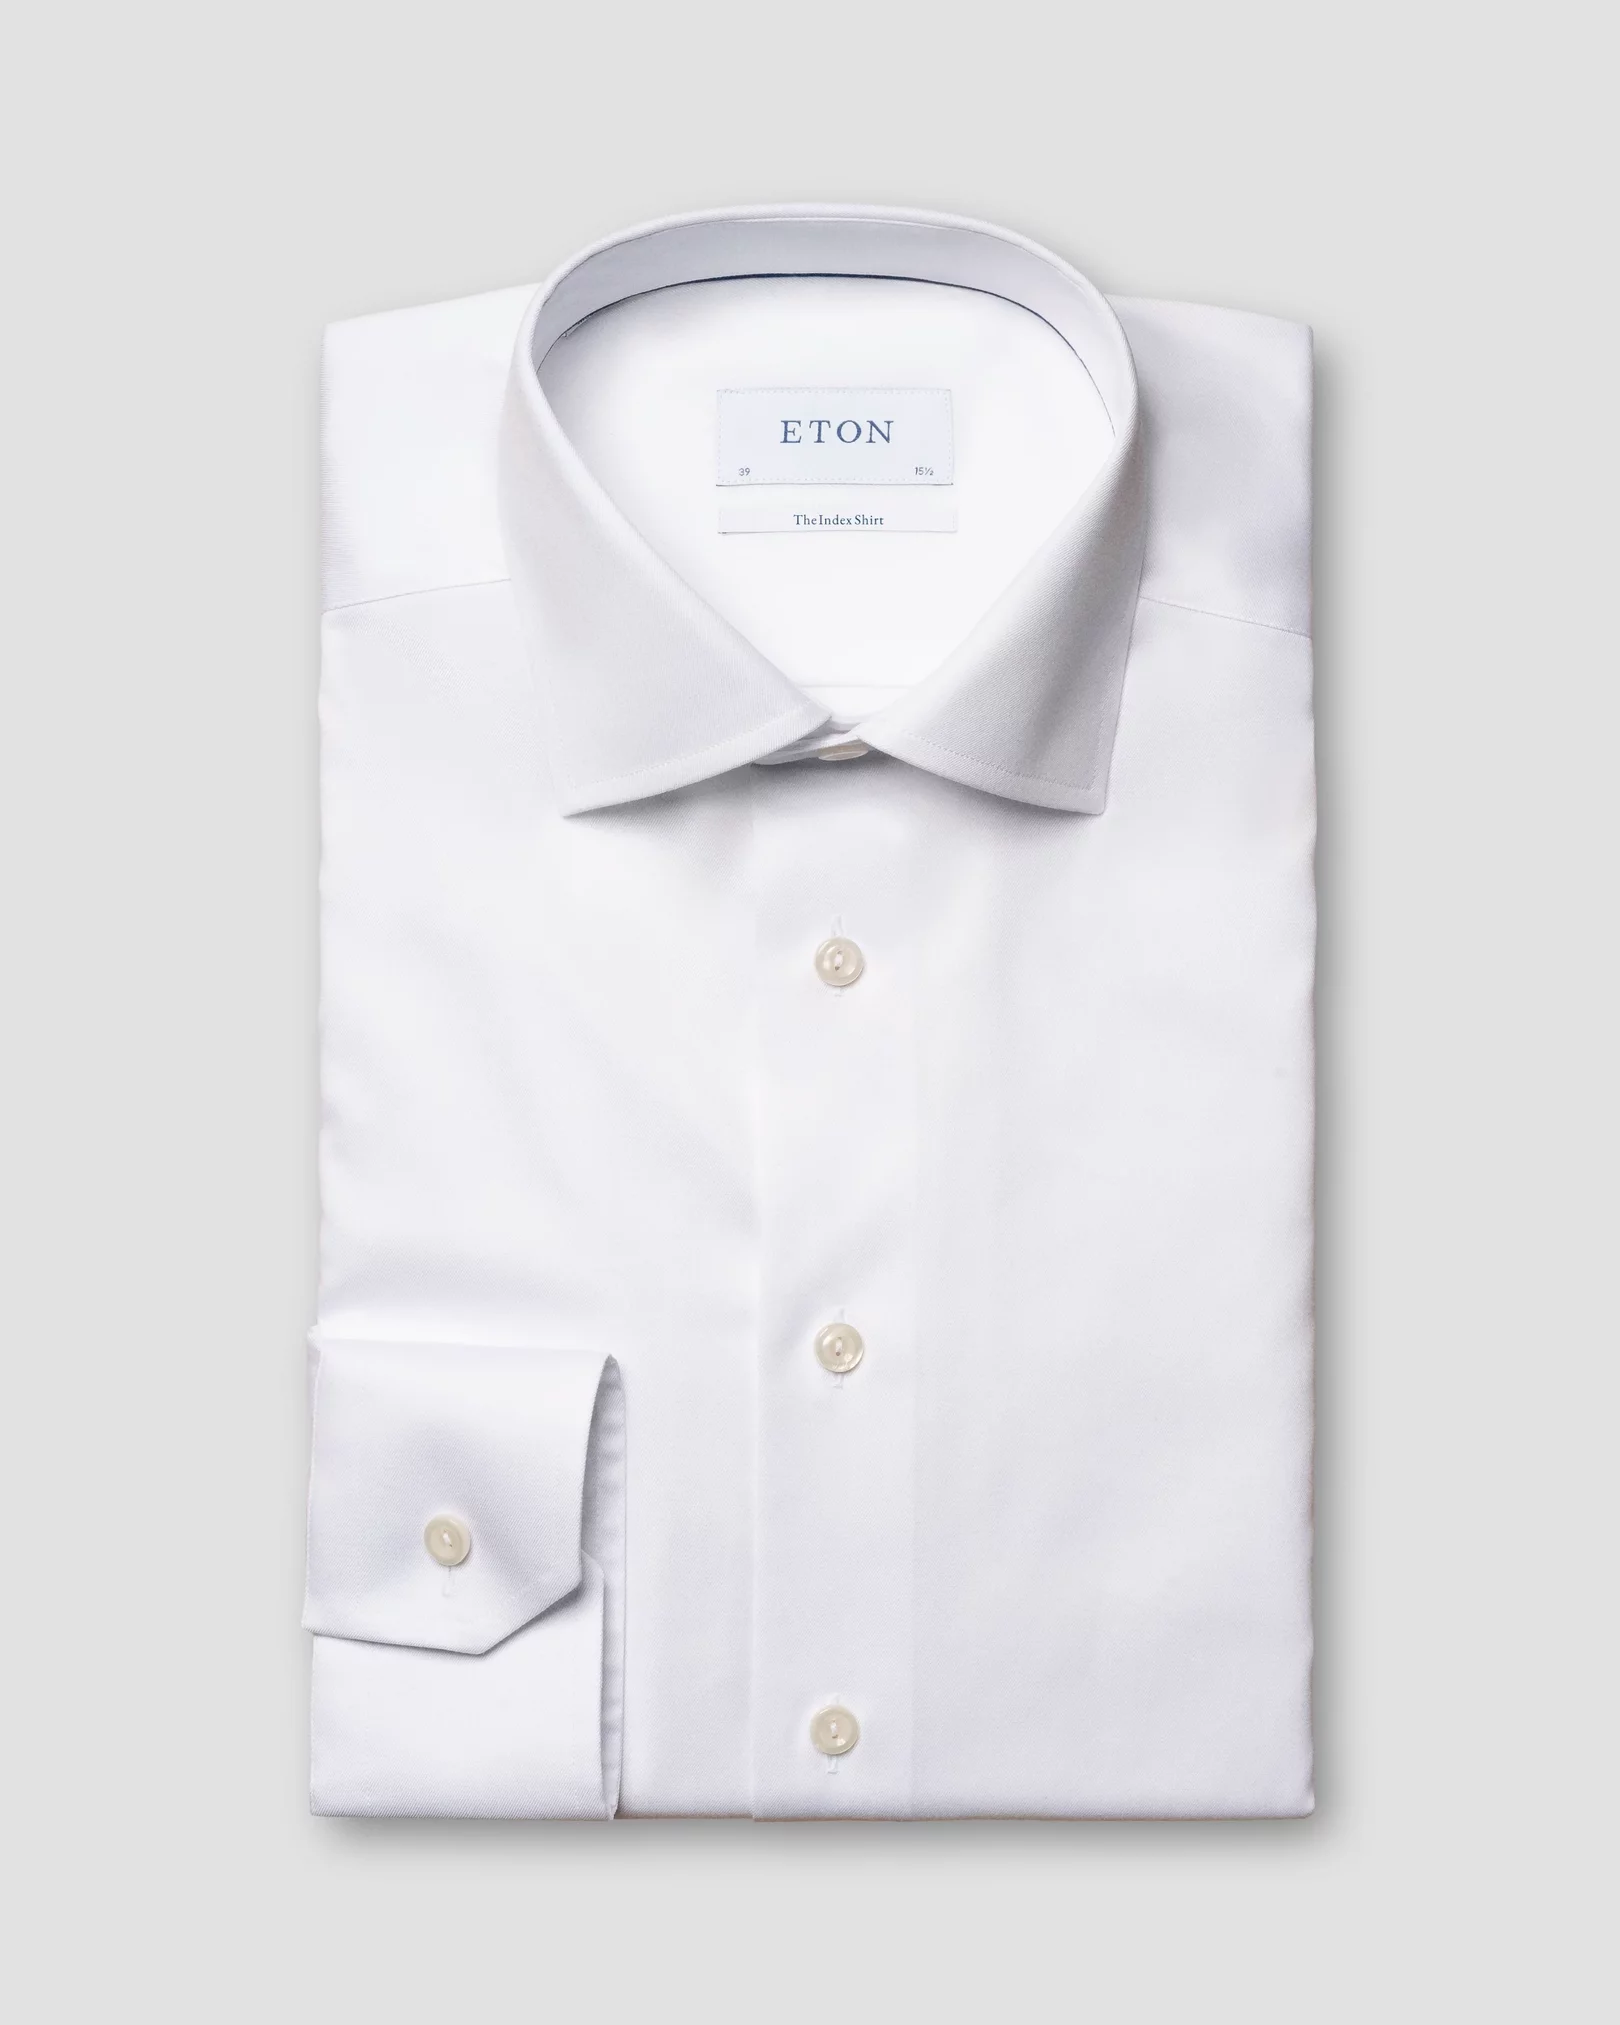 Eton - the index shirt